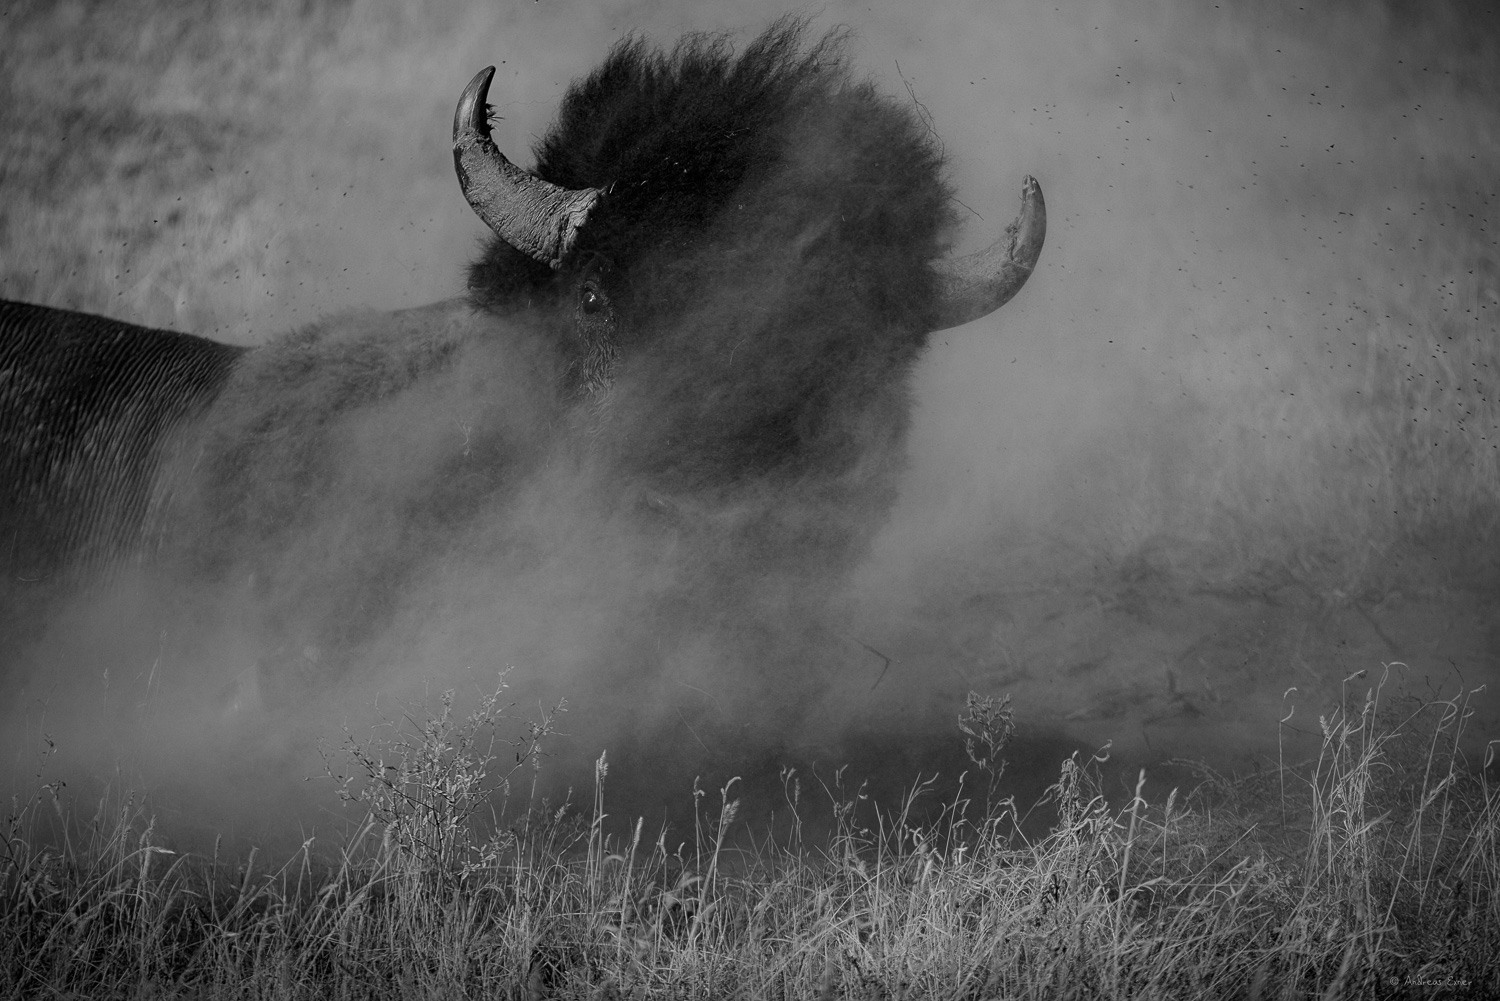 Wallowing bison, Badlands, South Dakota